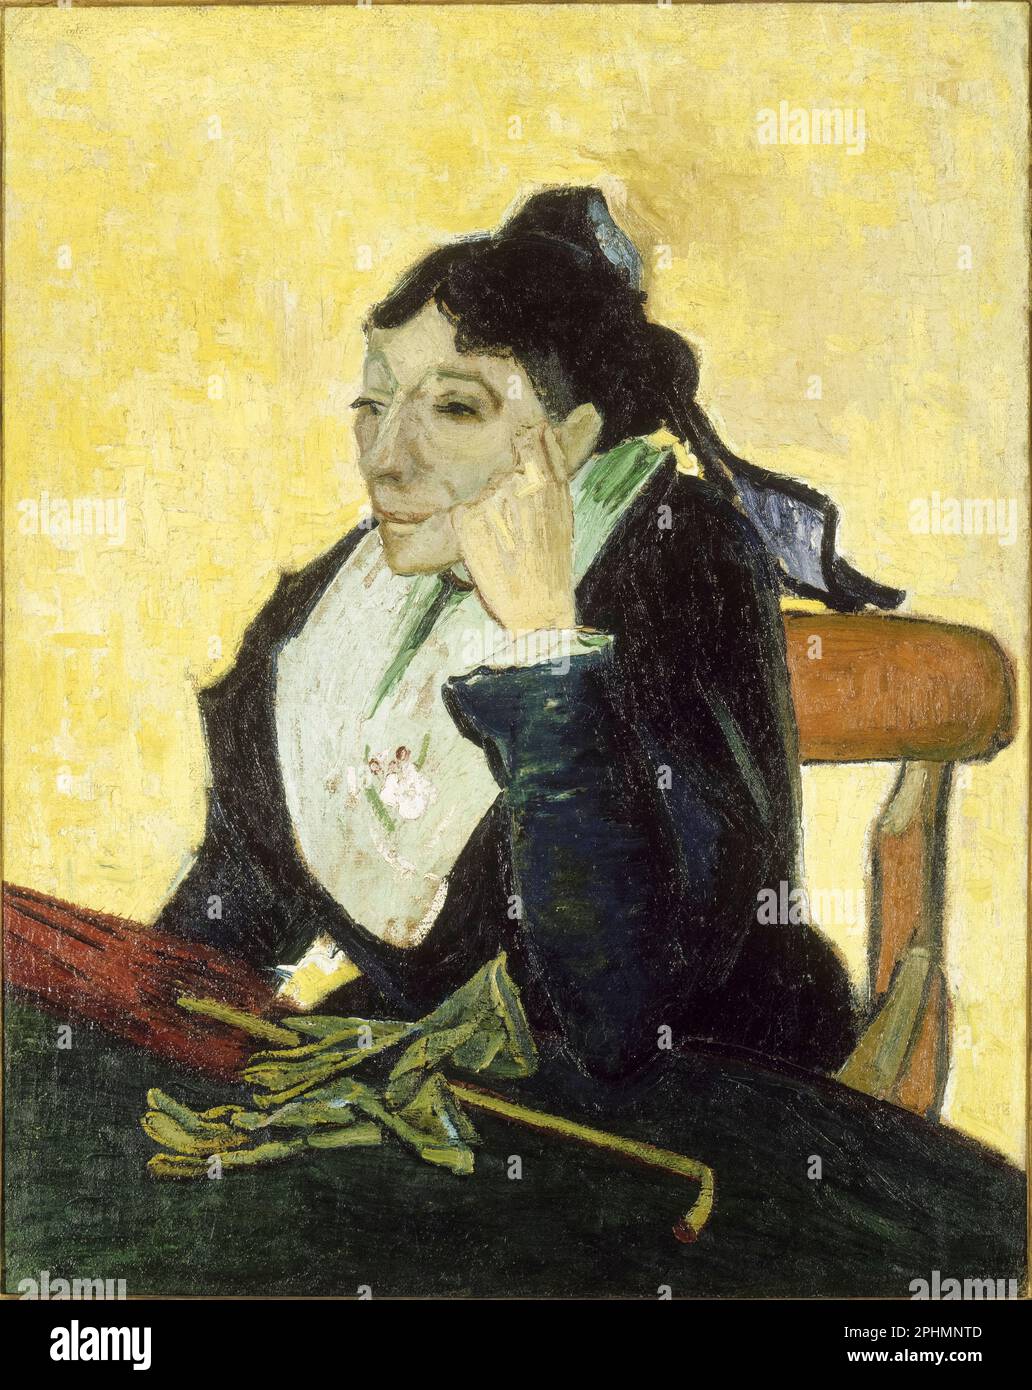 L'Arlesienne, portrait peint à l'huile sur toile par Vincent van Gogh, 1888 Banque D'Images